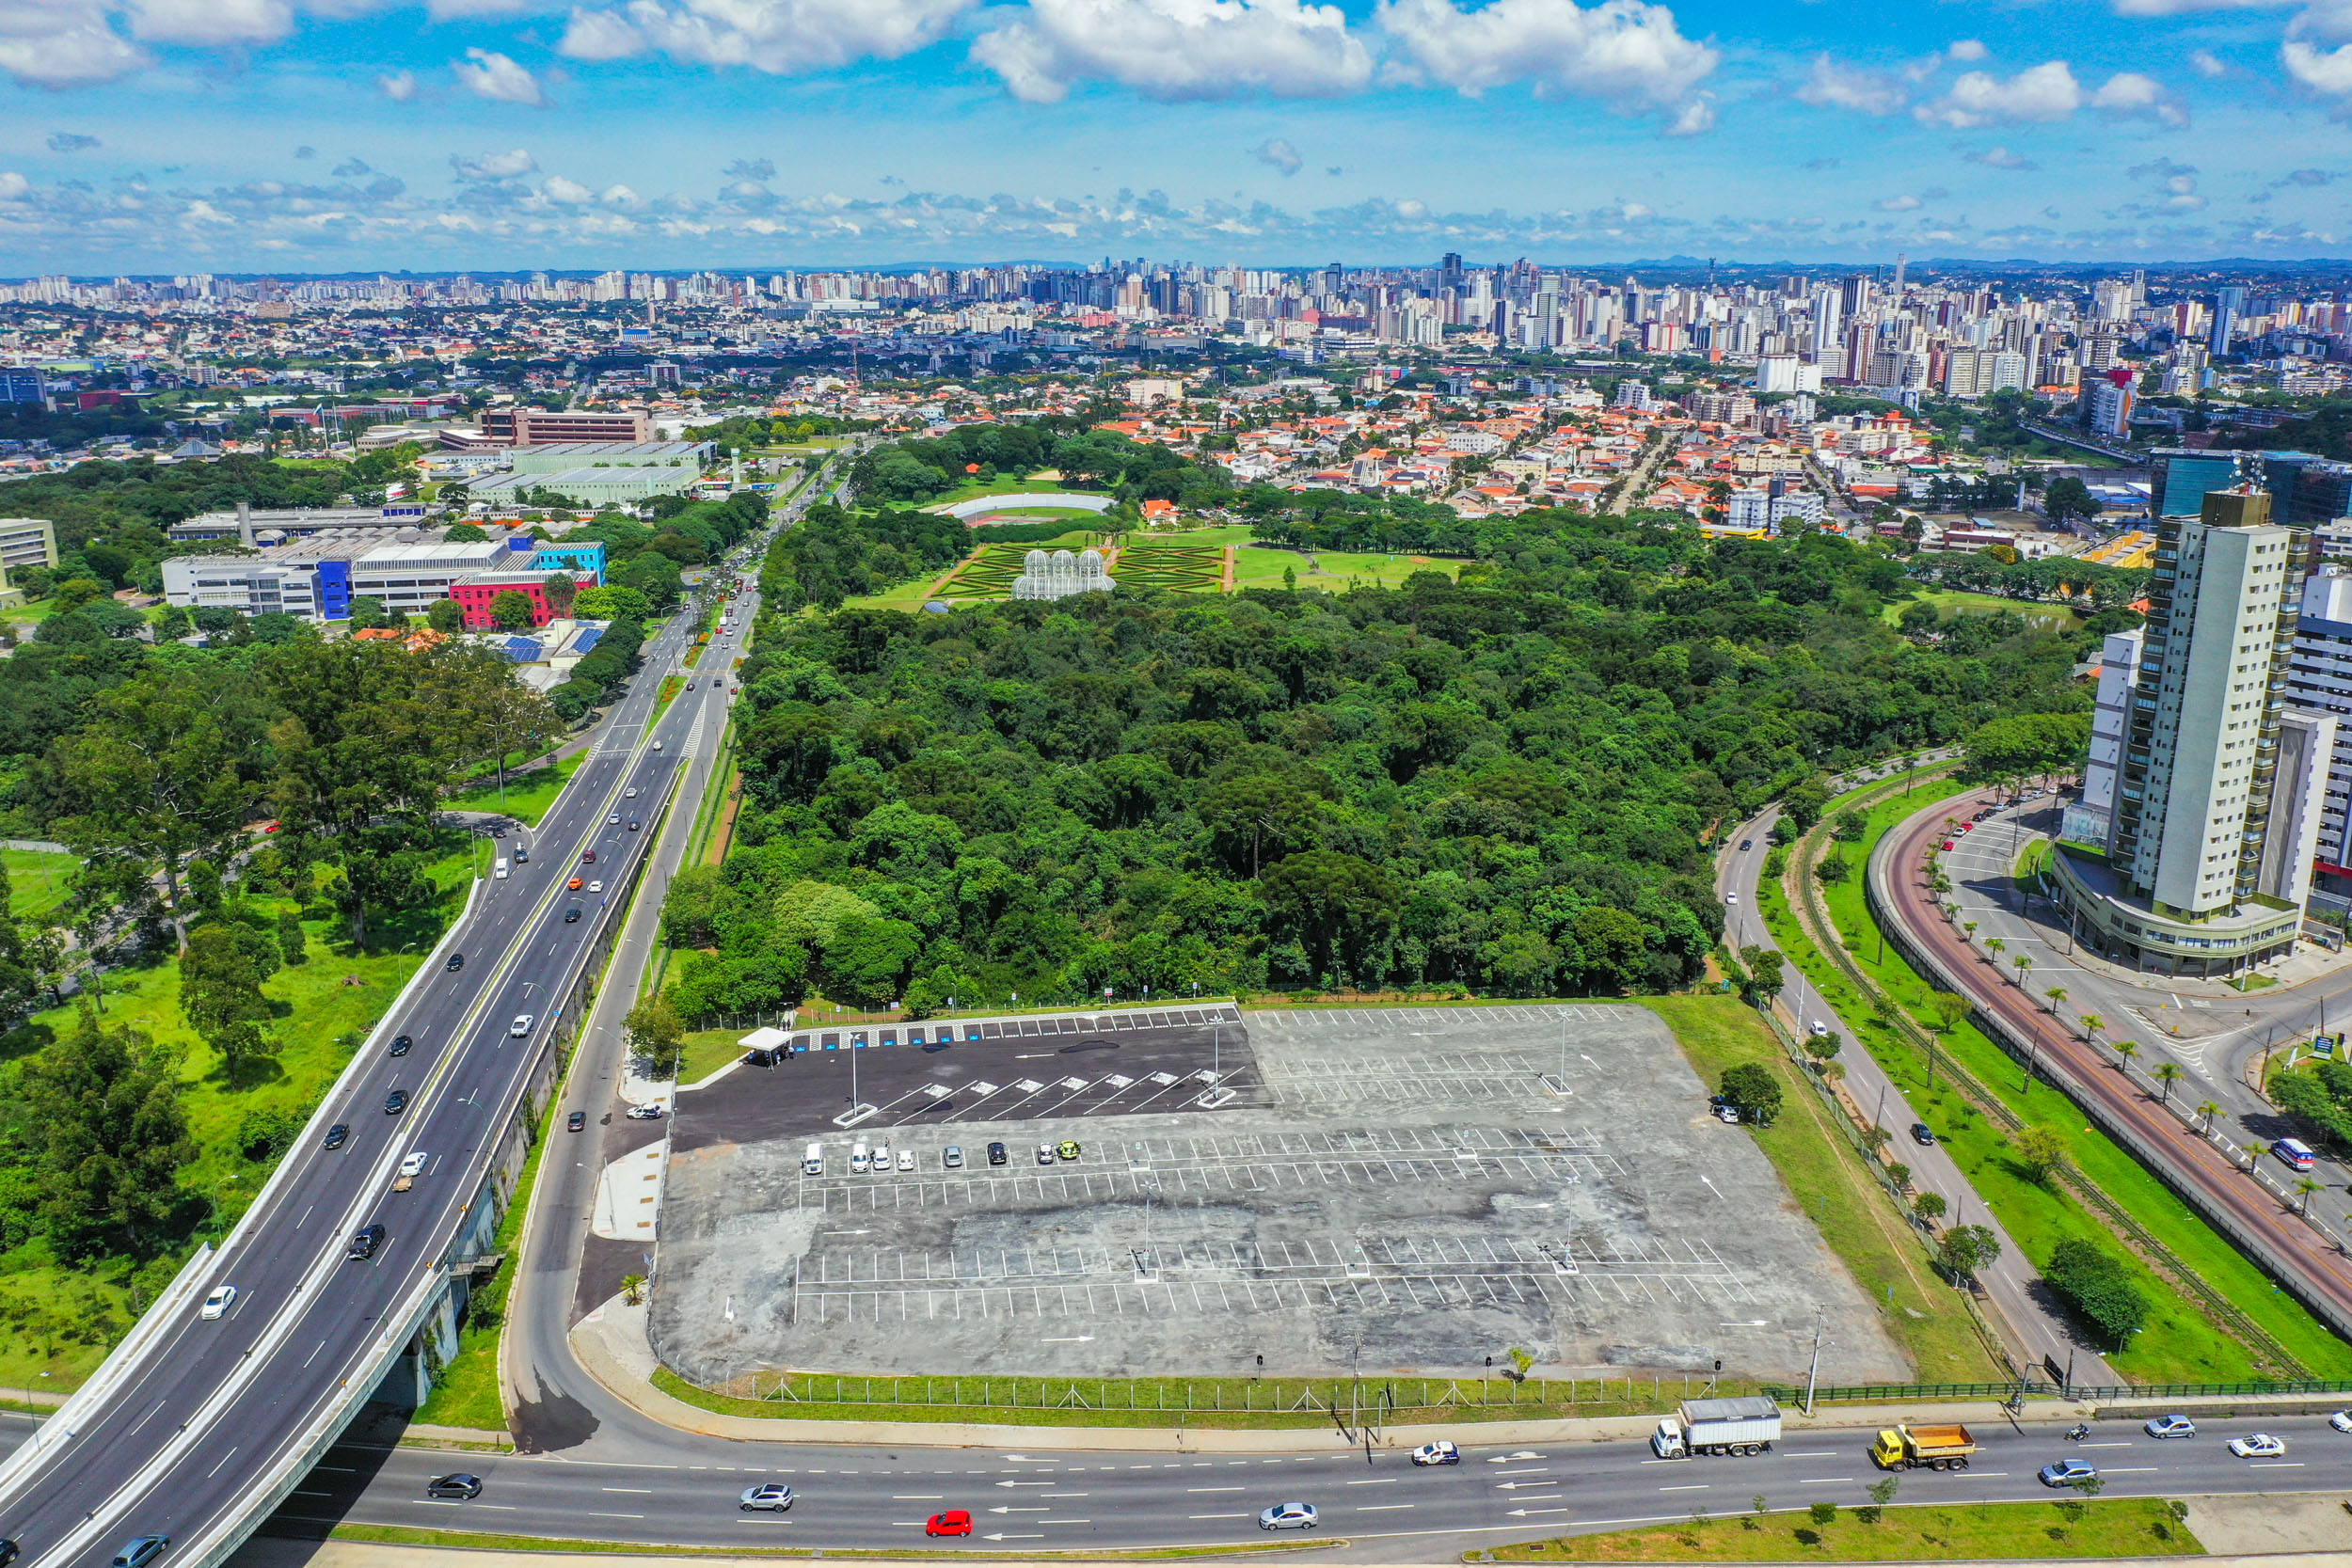 Revitalizado, estacionamento do Jardim Botânico, em Curitiba, é liberado